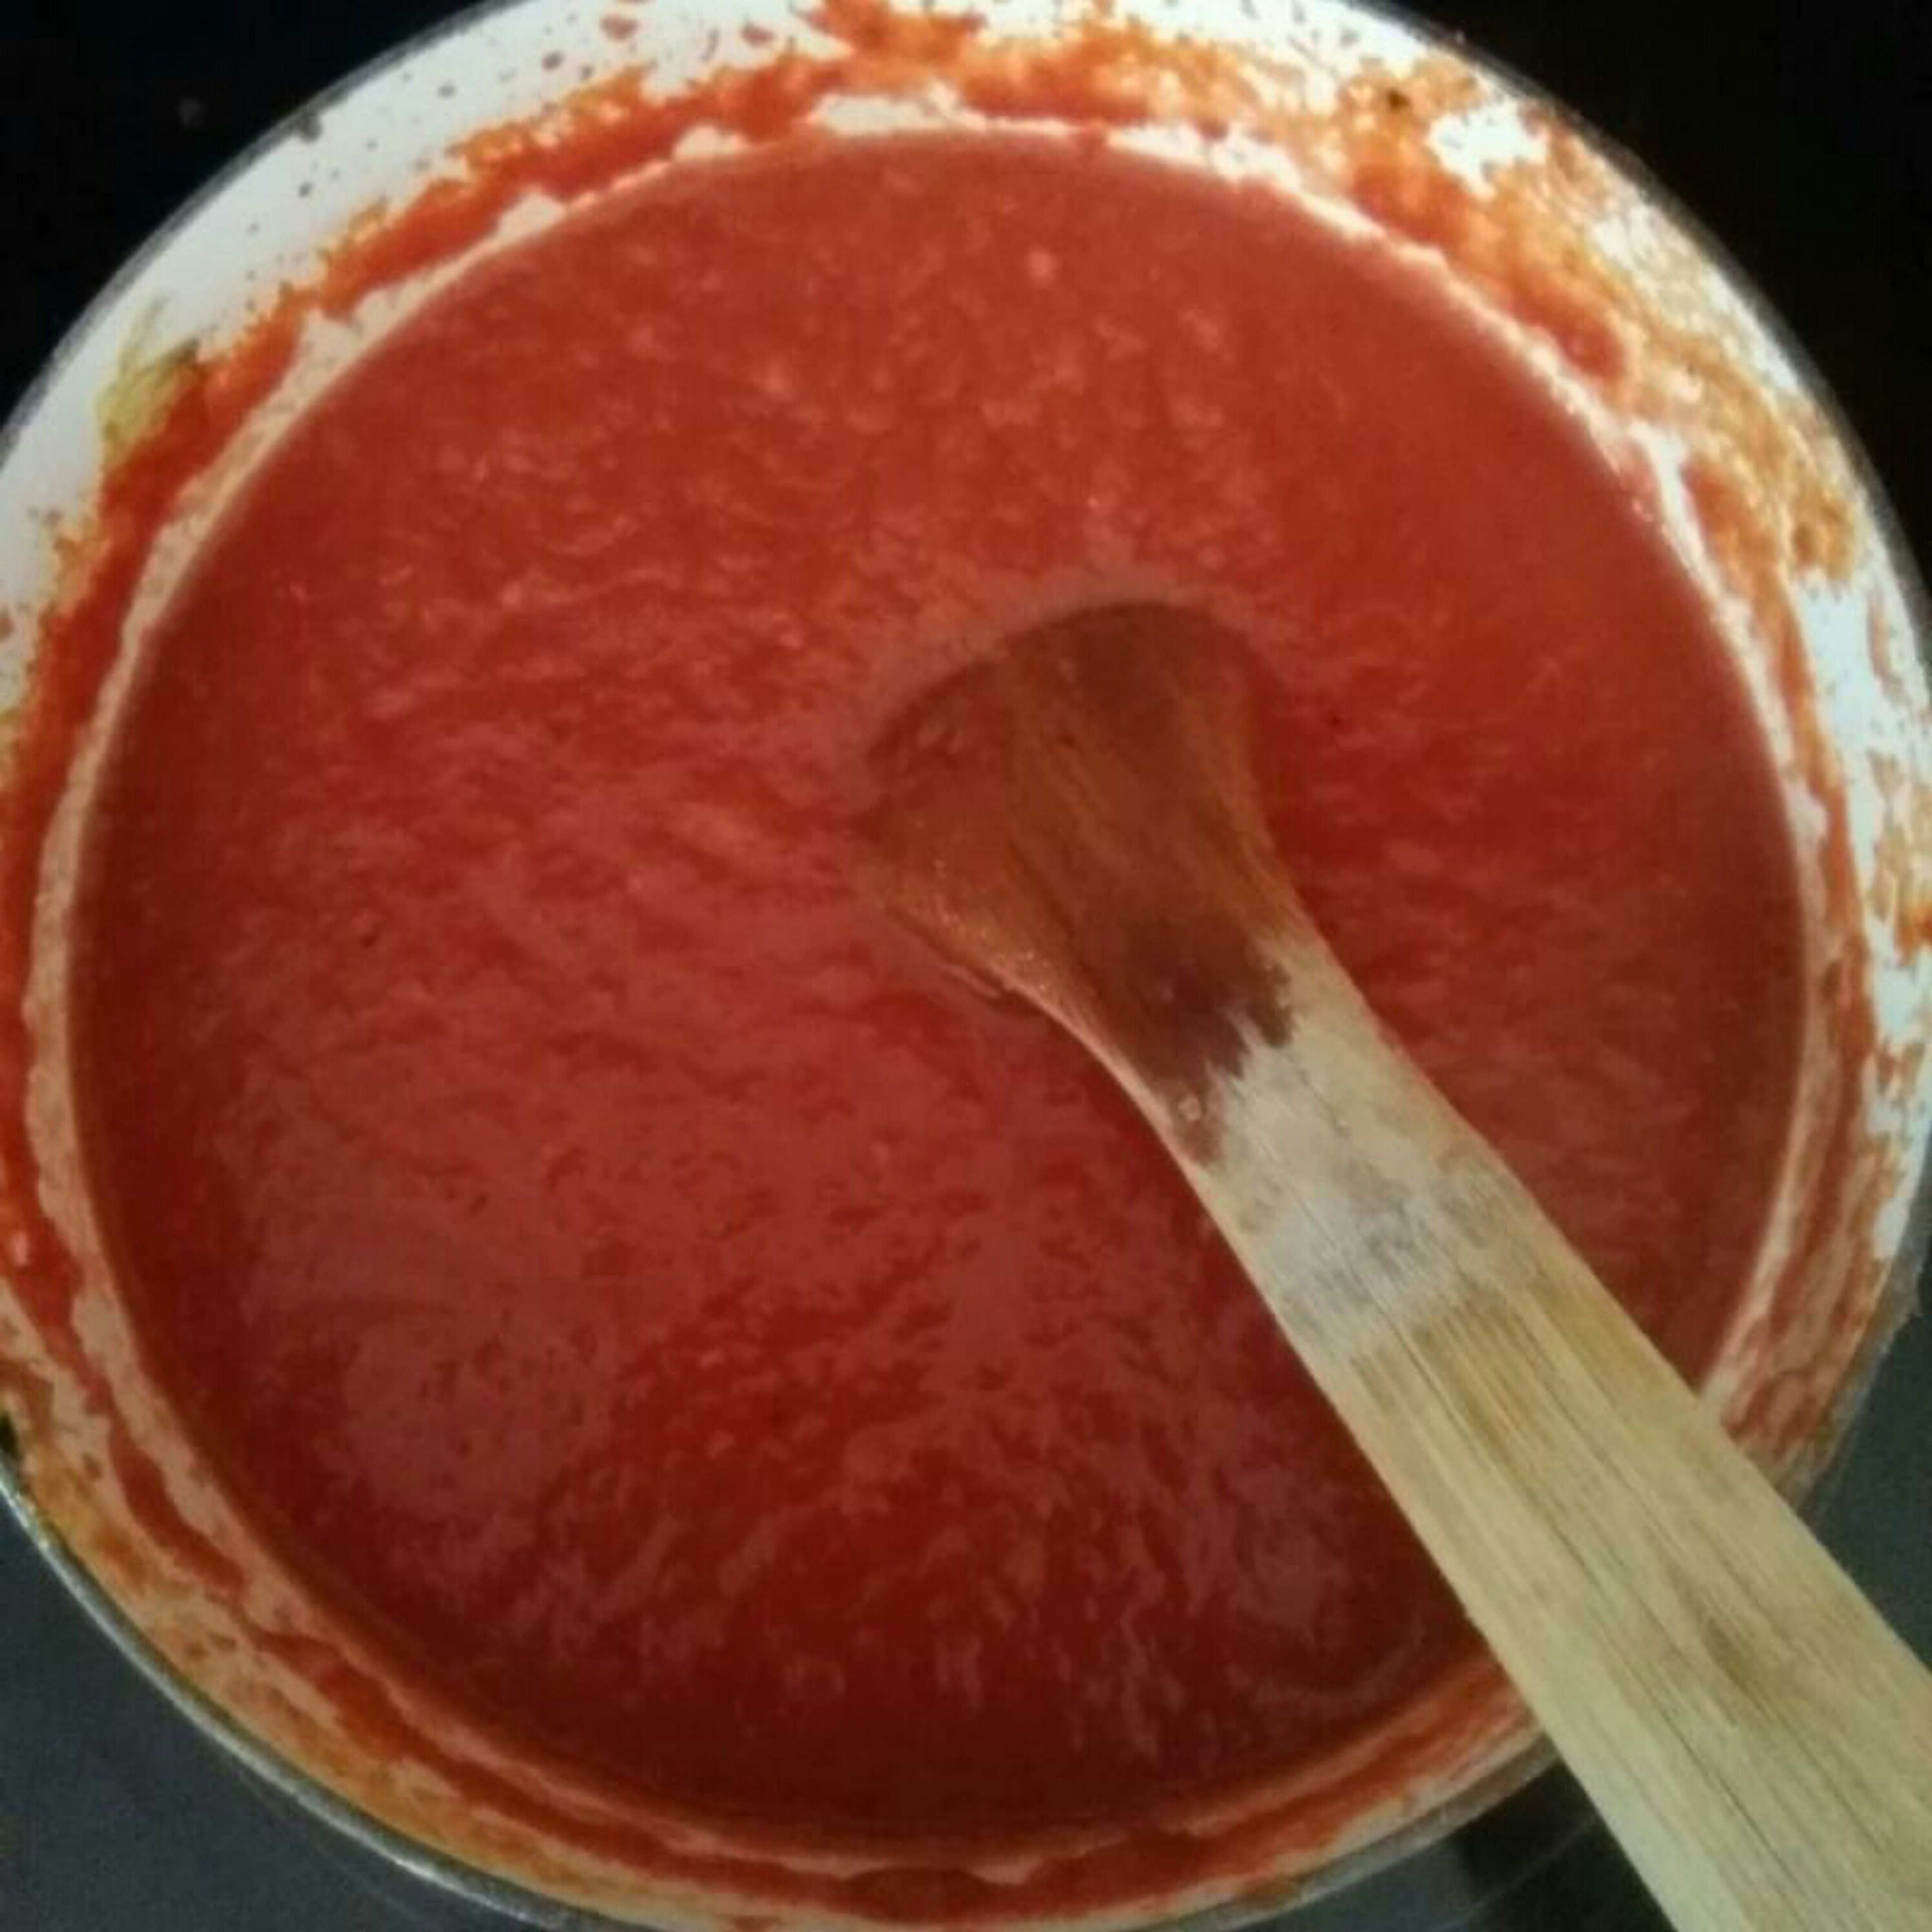 Tomatoe sauce